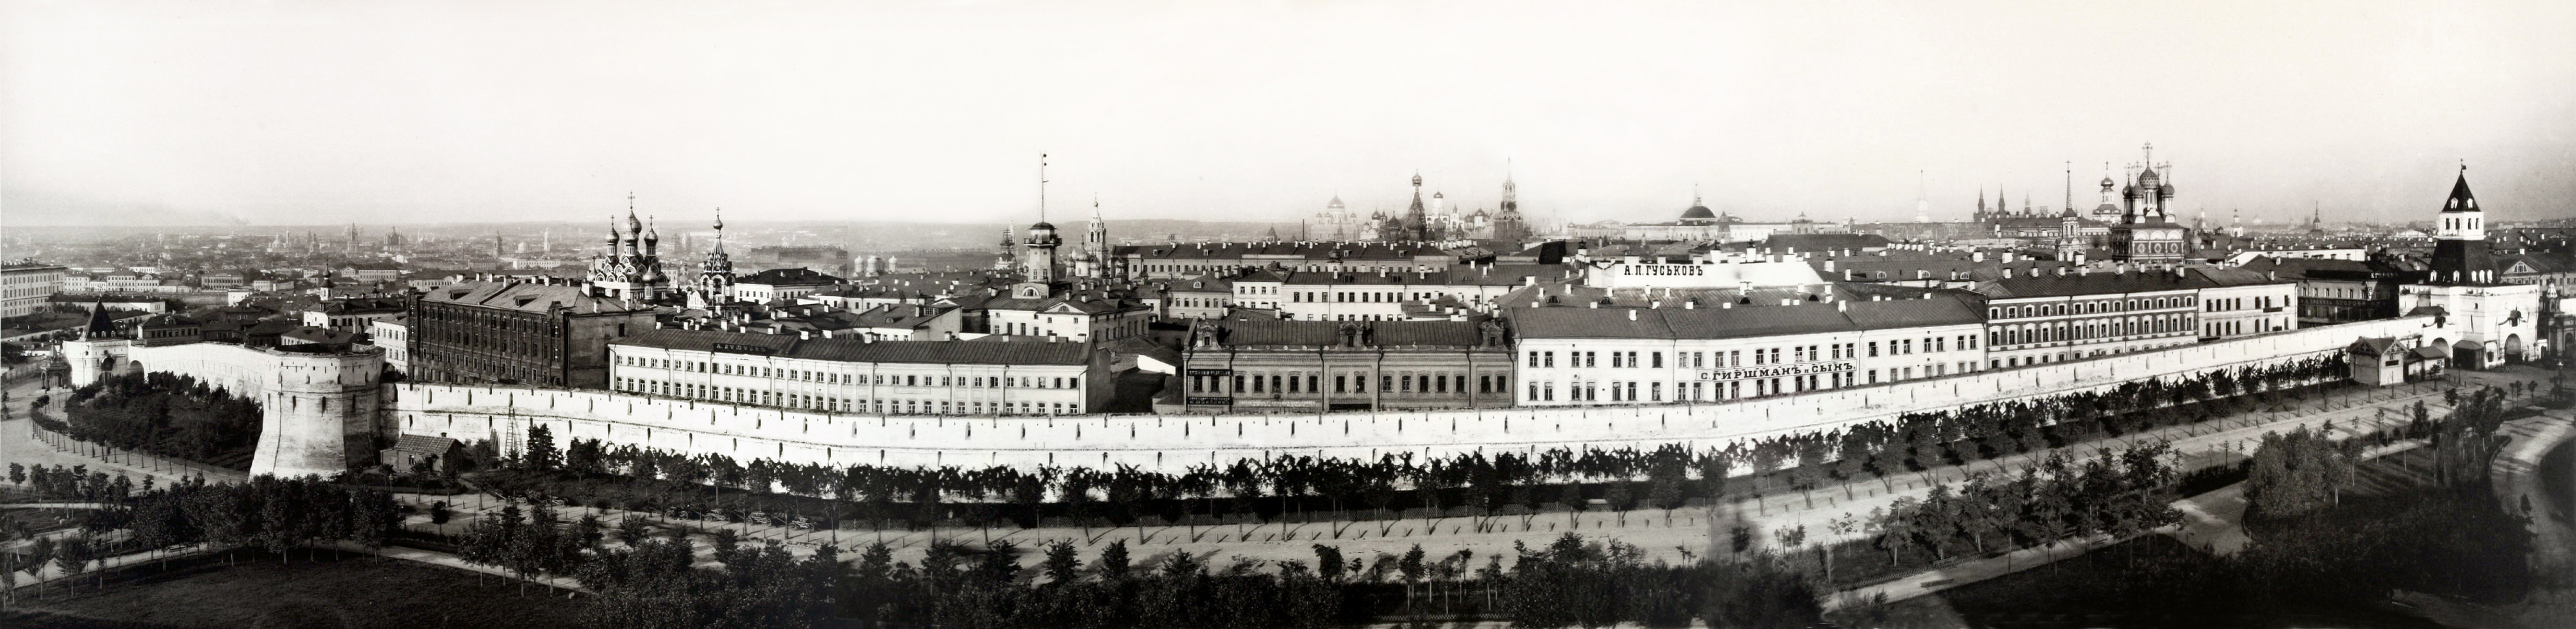 Old Kitai Gorod Moscow 1887 старый китай город москва